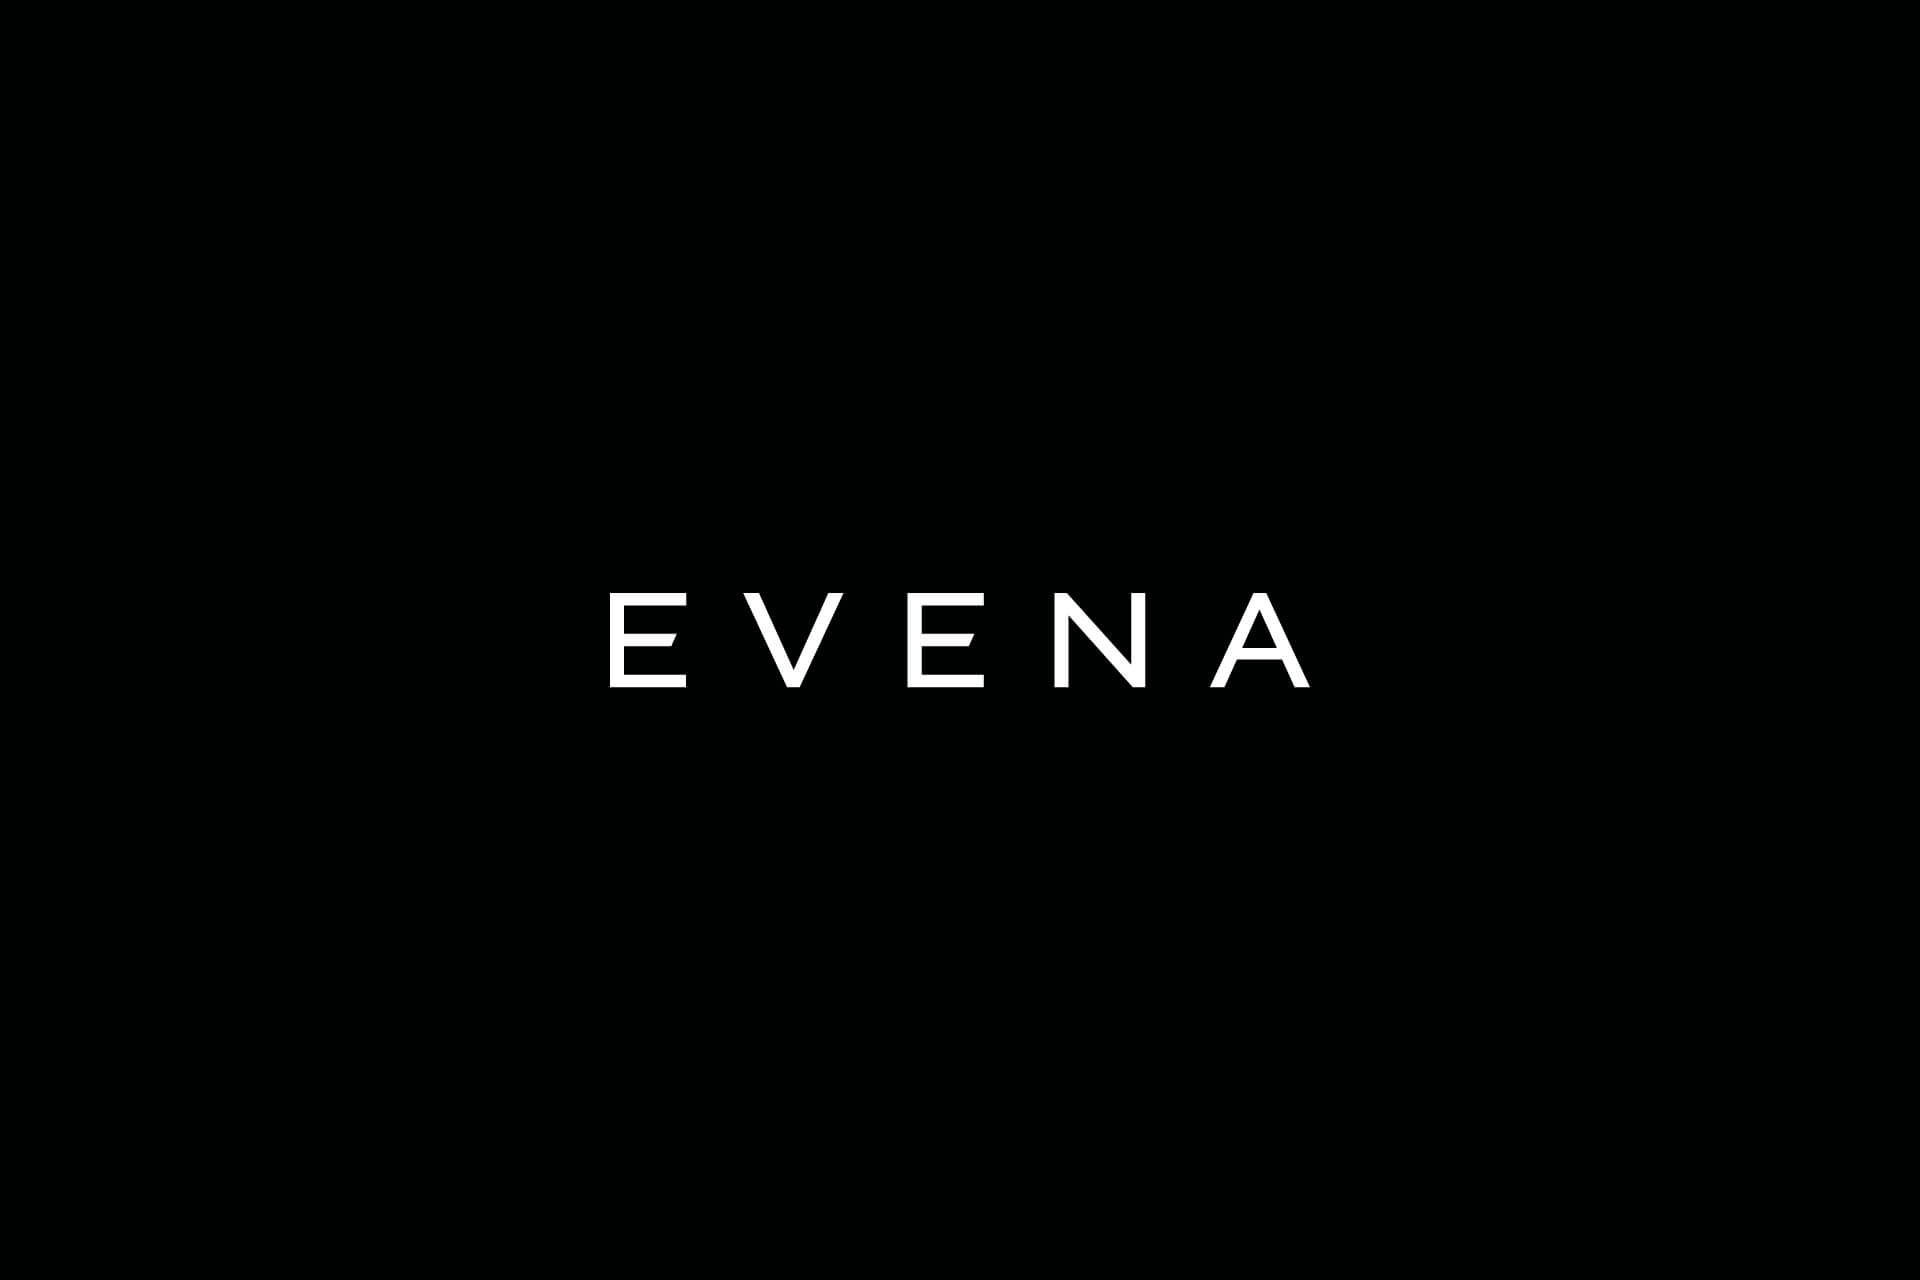 Evena - Made Agency